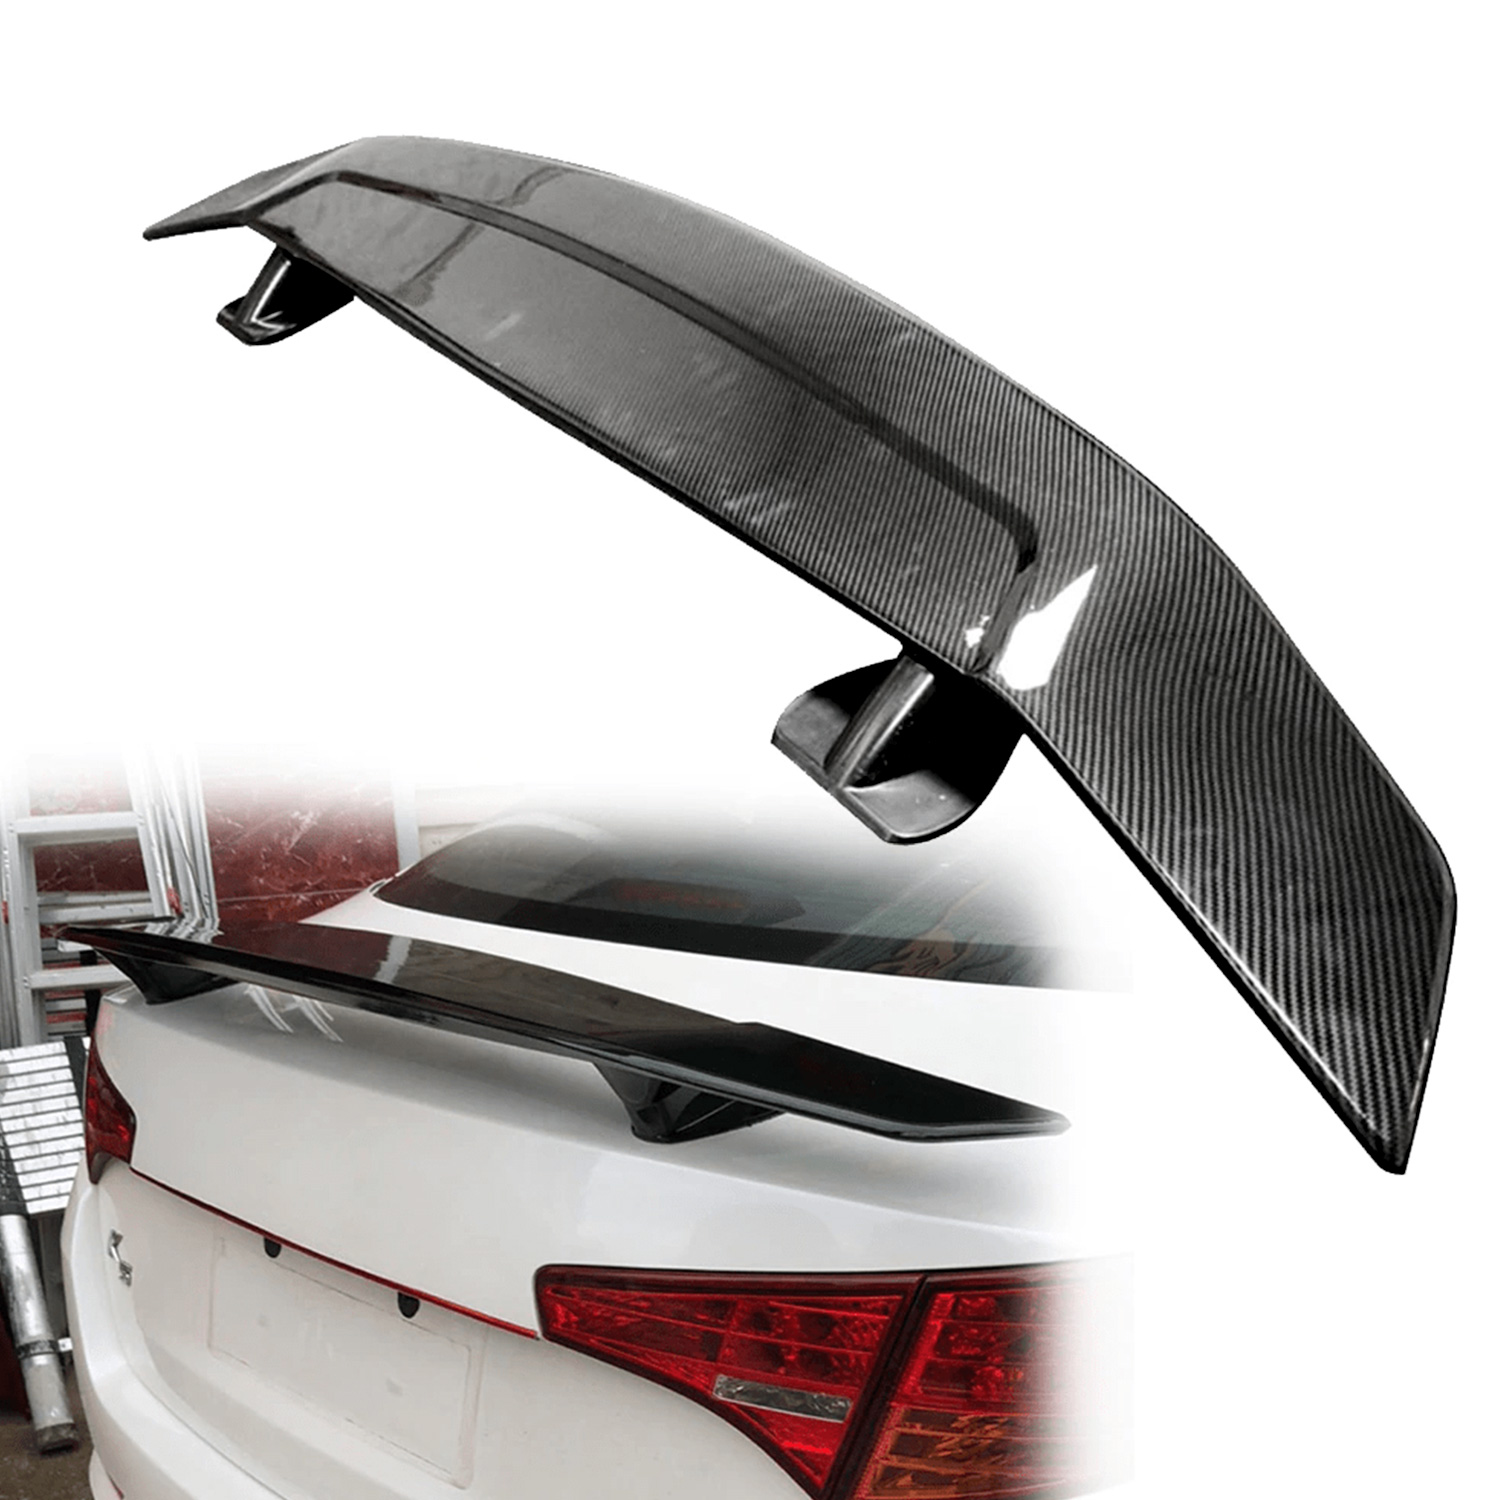 https://carhatke.com/image/catalog/spoilers/sedan-car-rear-wing-universal-spoiler-1.jpg